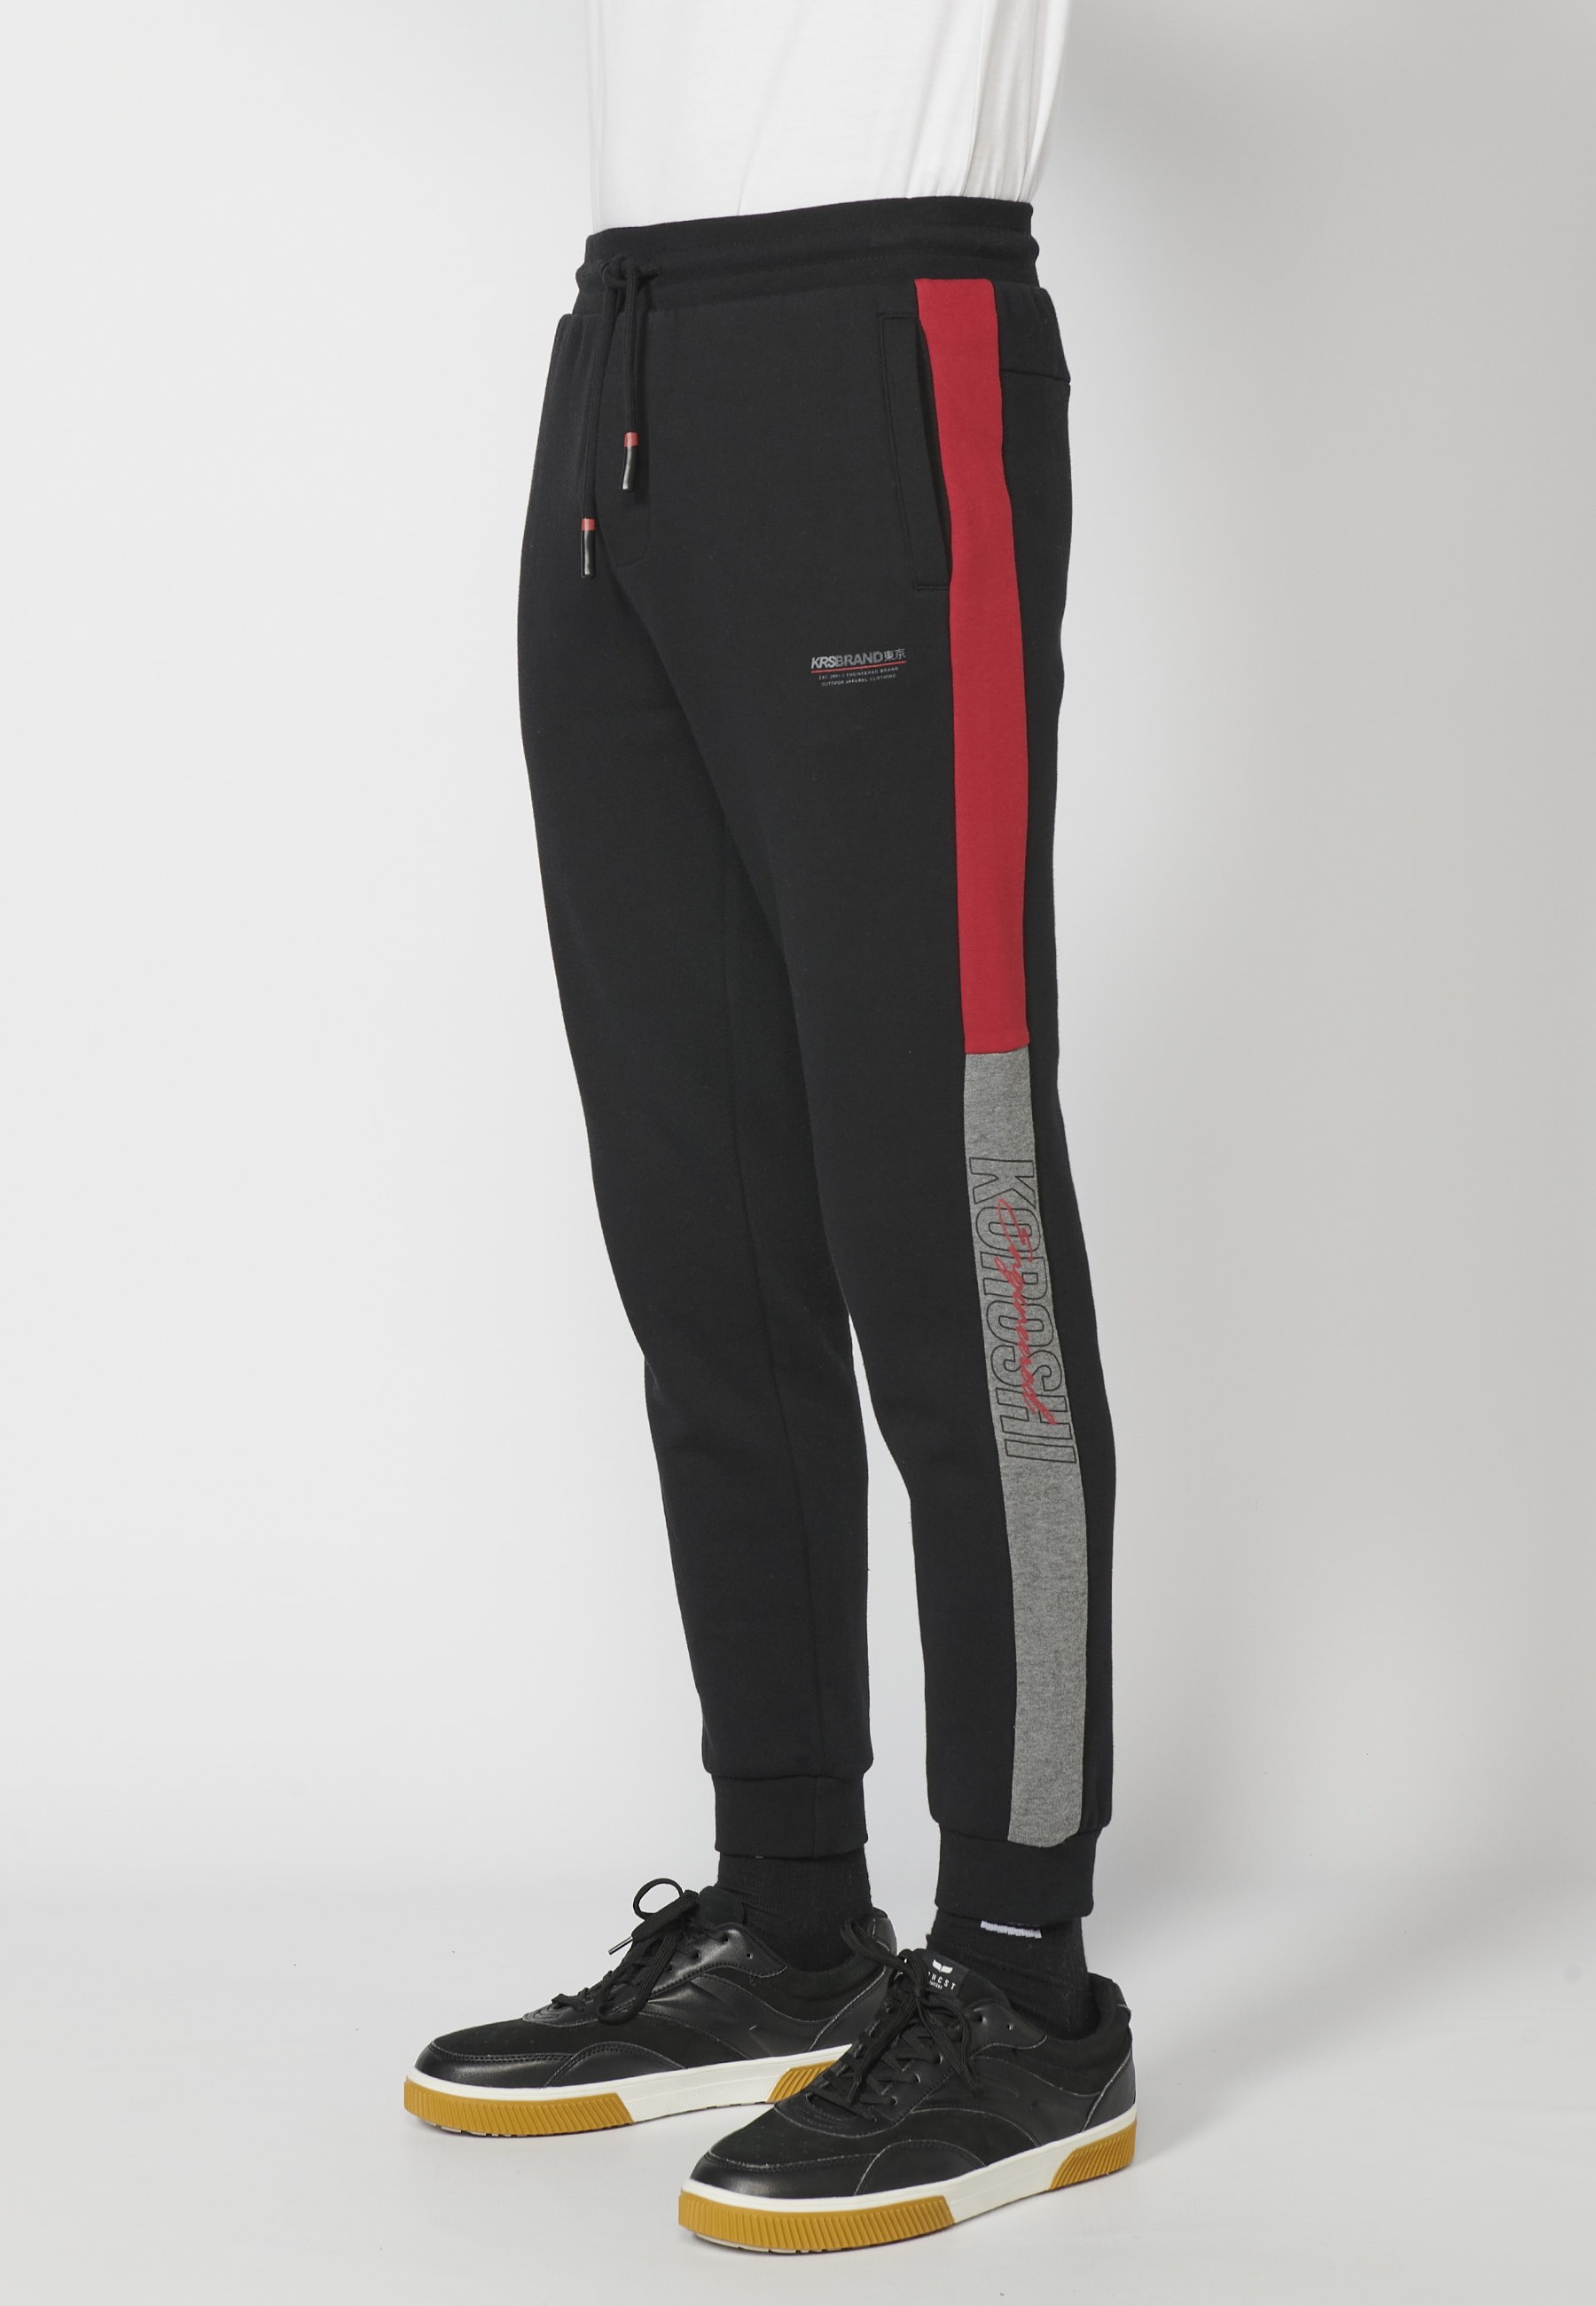 Pantalon de jogging long avec taille élastique réglable, détail latéral,  couleur noir pour Homme